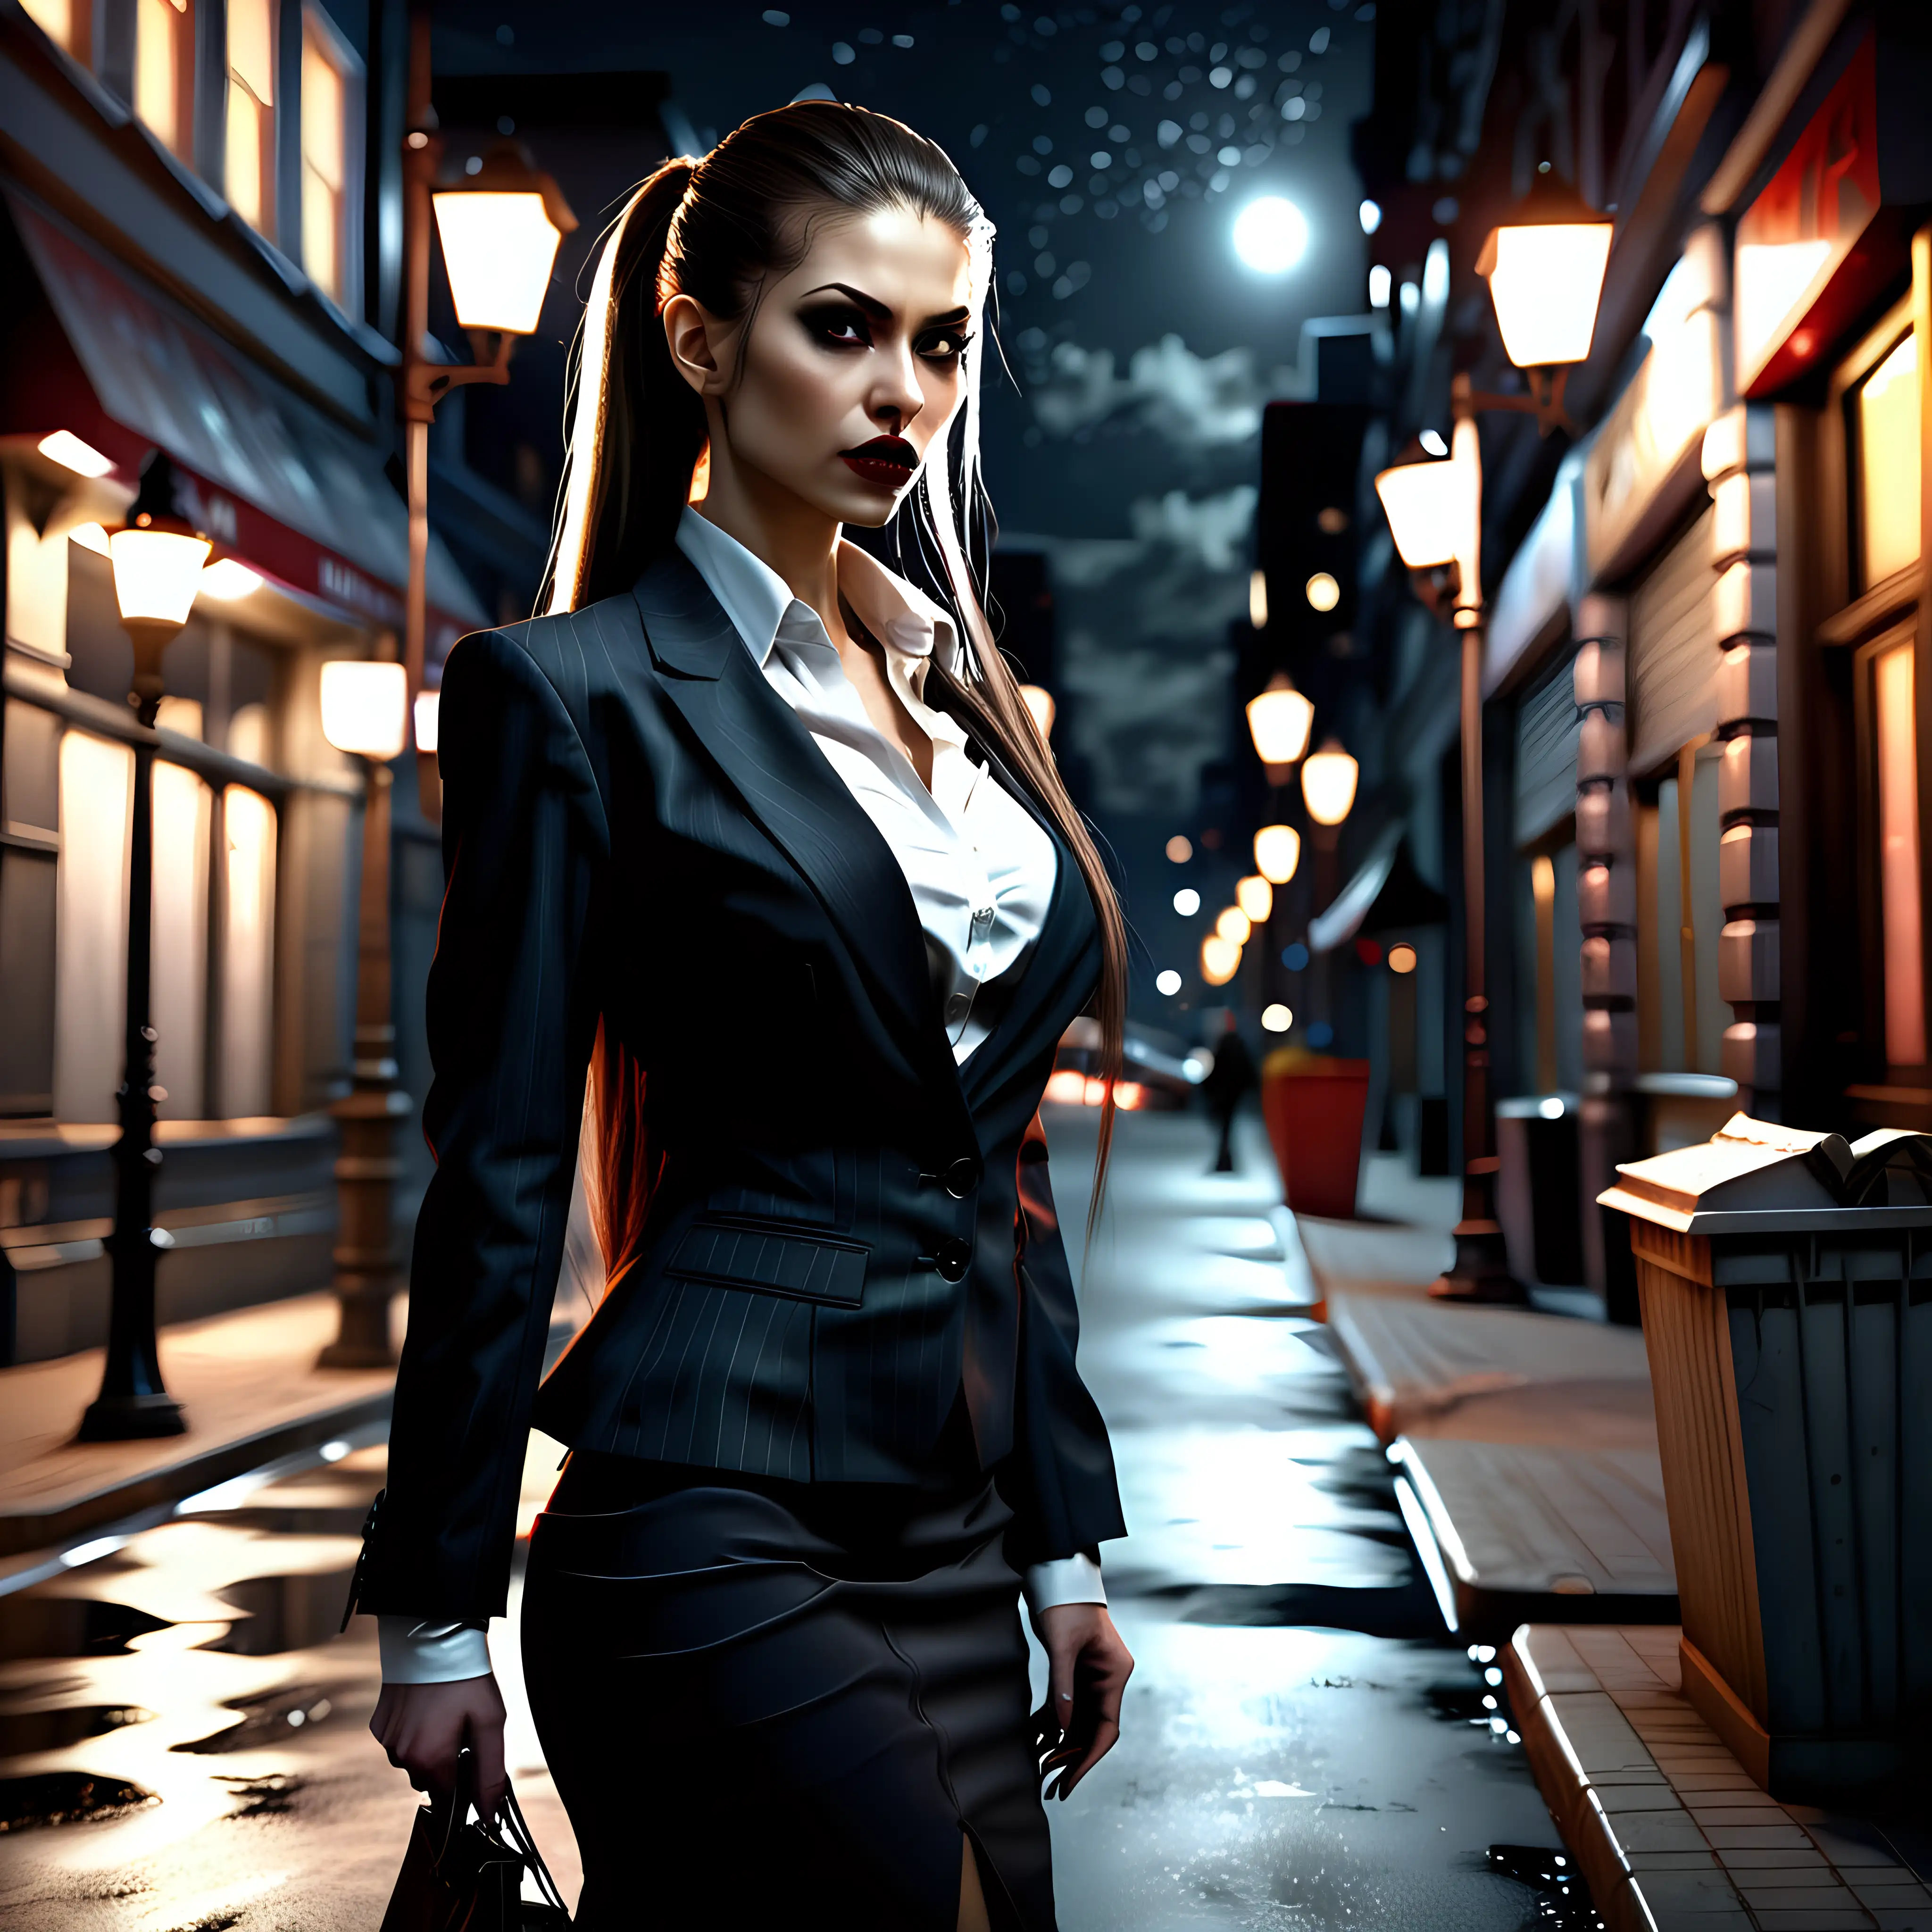 Nocturnal Elegance Businesswoman Malkavian Vampire in Nighttime Attire